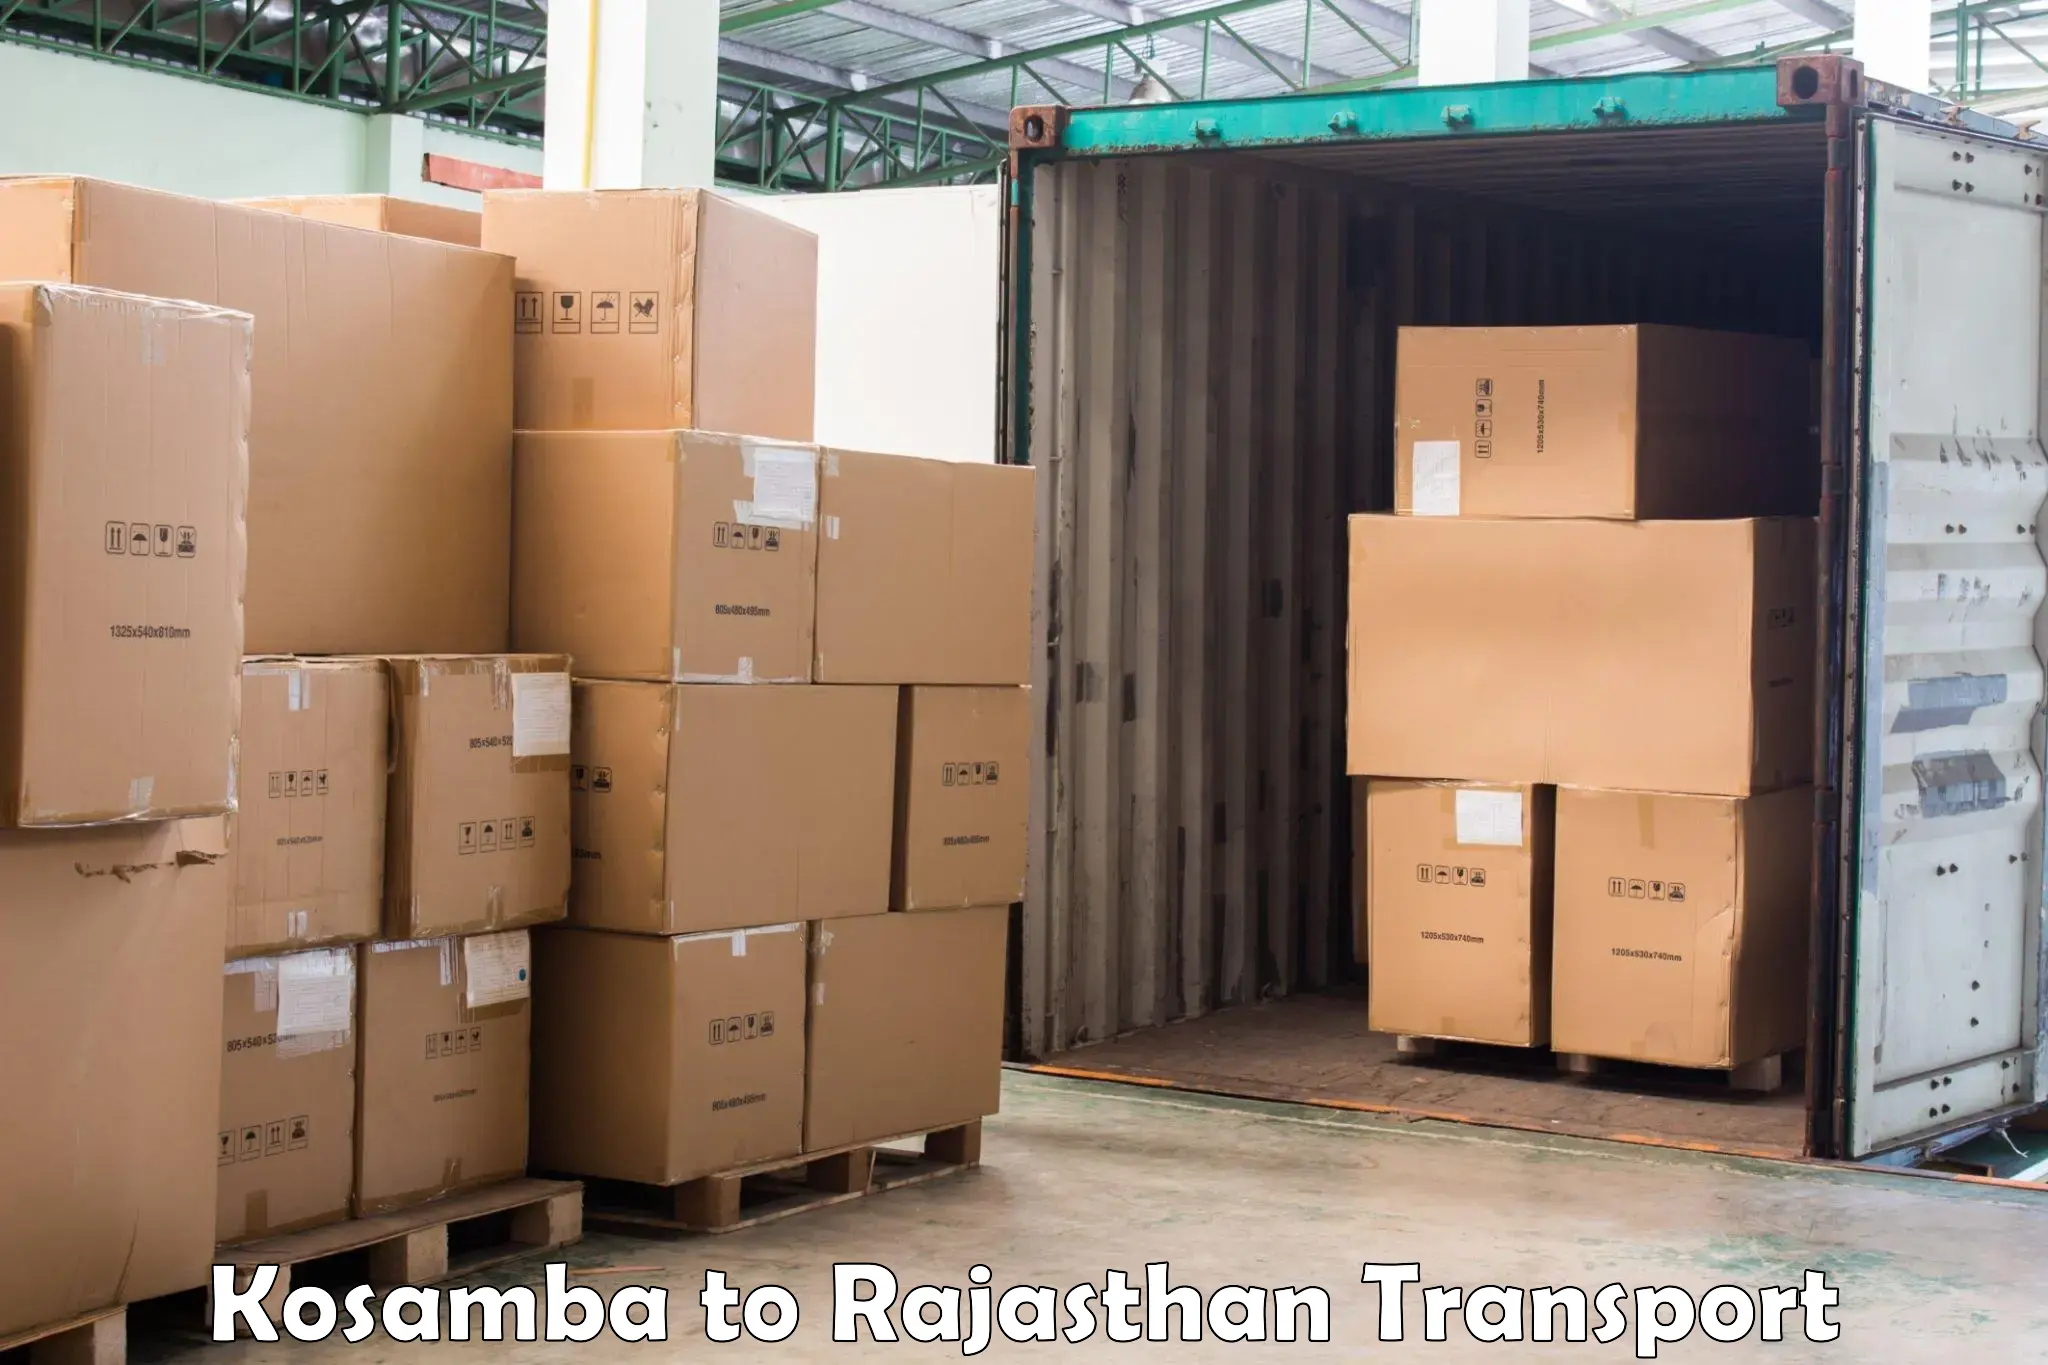 Land transport services Kosamba to Rajasthan